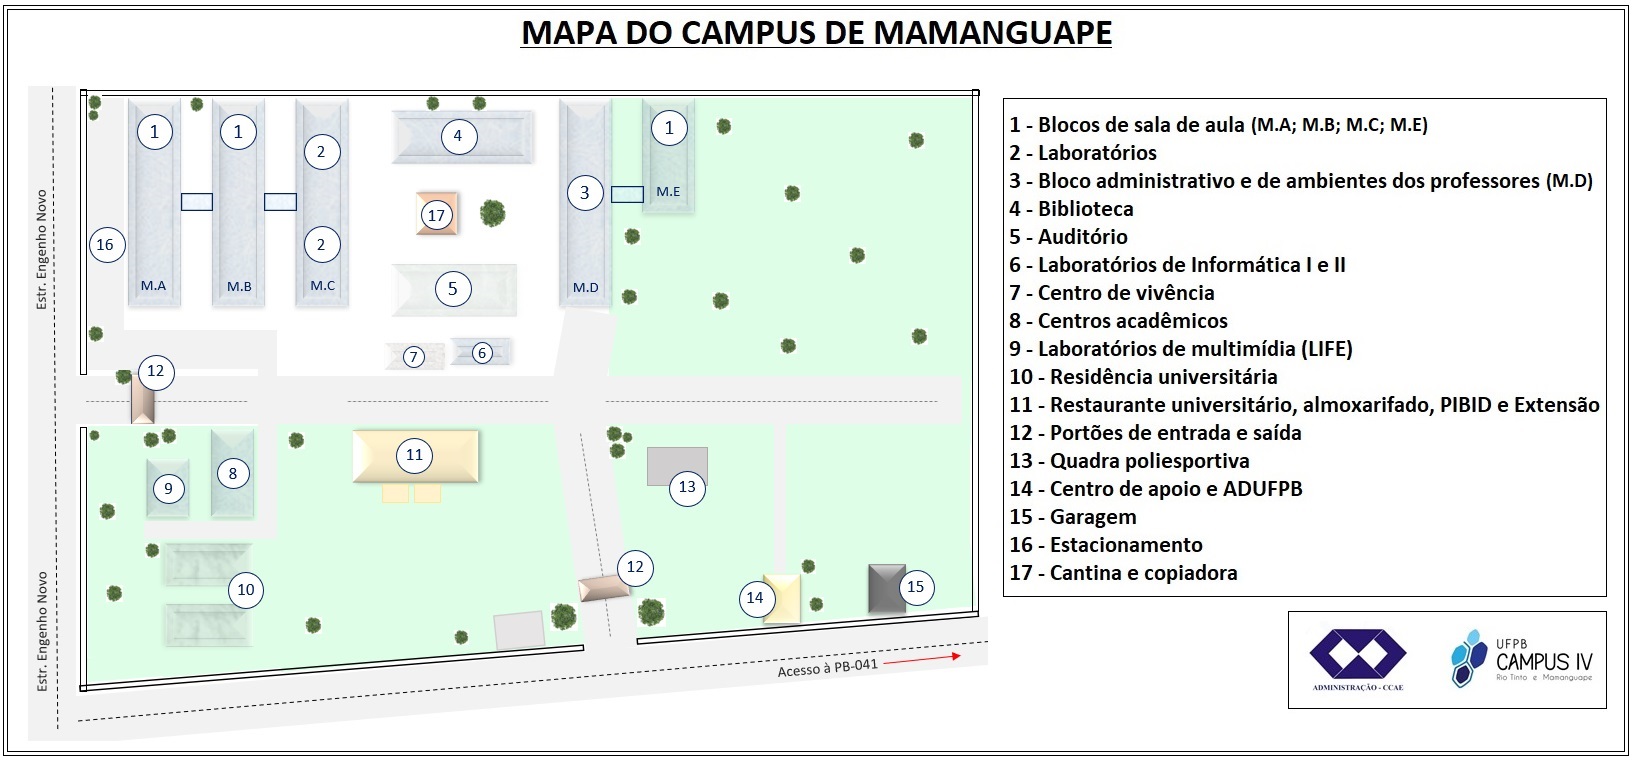 Mapa do campus de Mamanguape atual.jpg